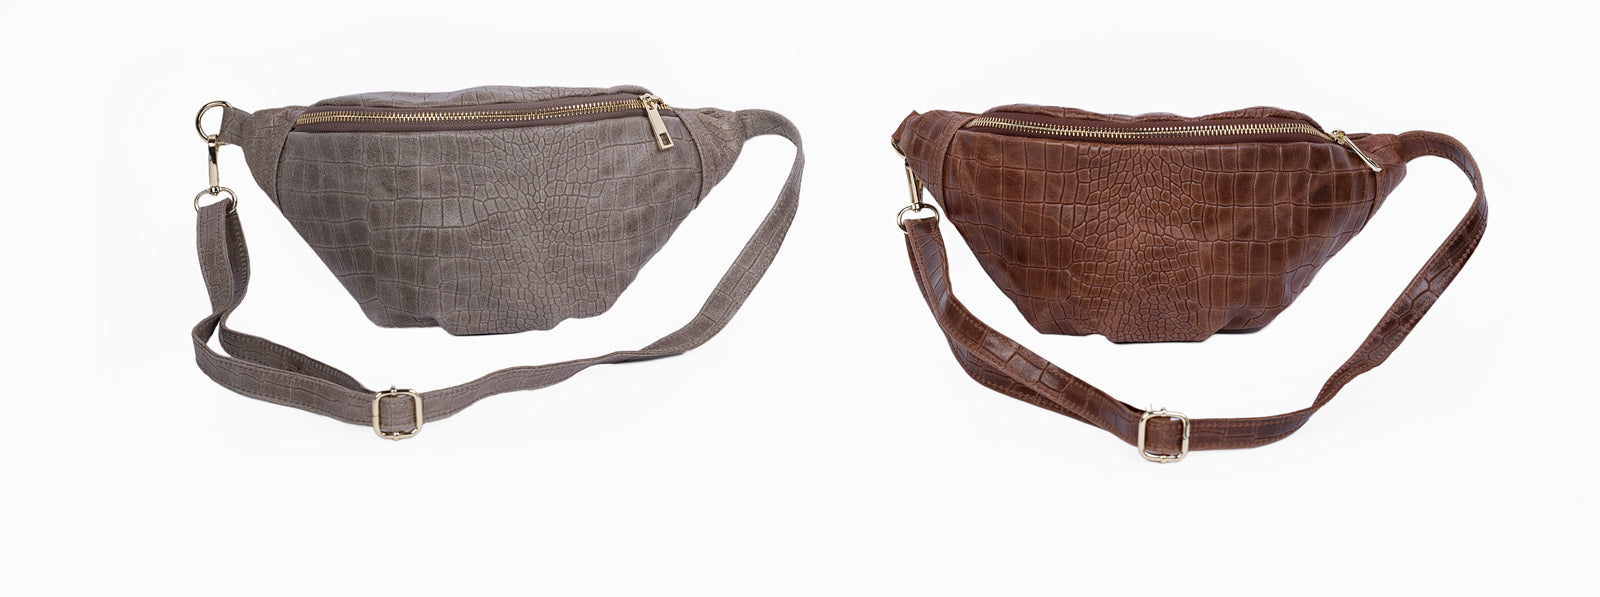 Antique MSK Bag Leather Vintage Shoulder Tote Purse Bag Women Handbag | eBay